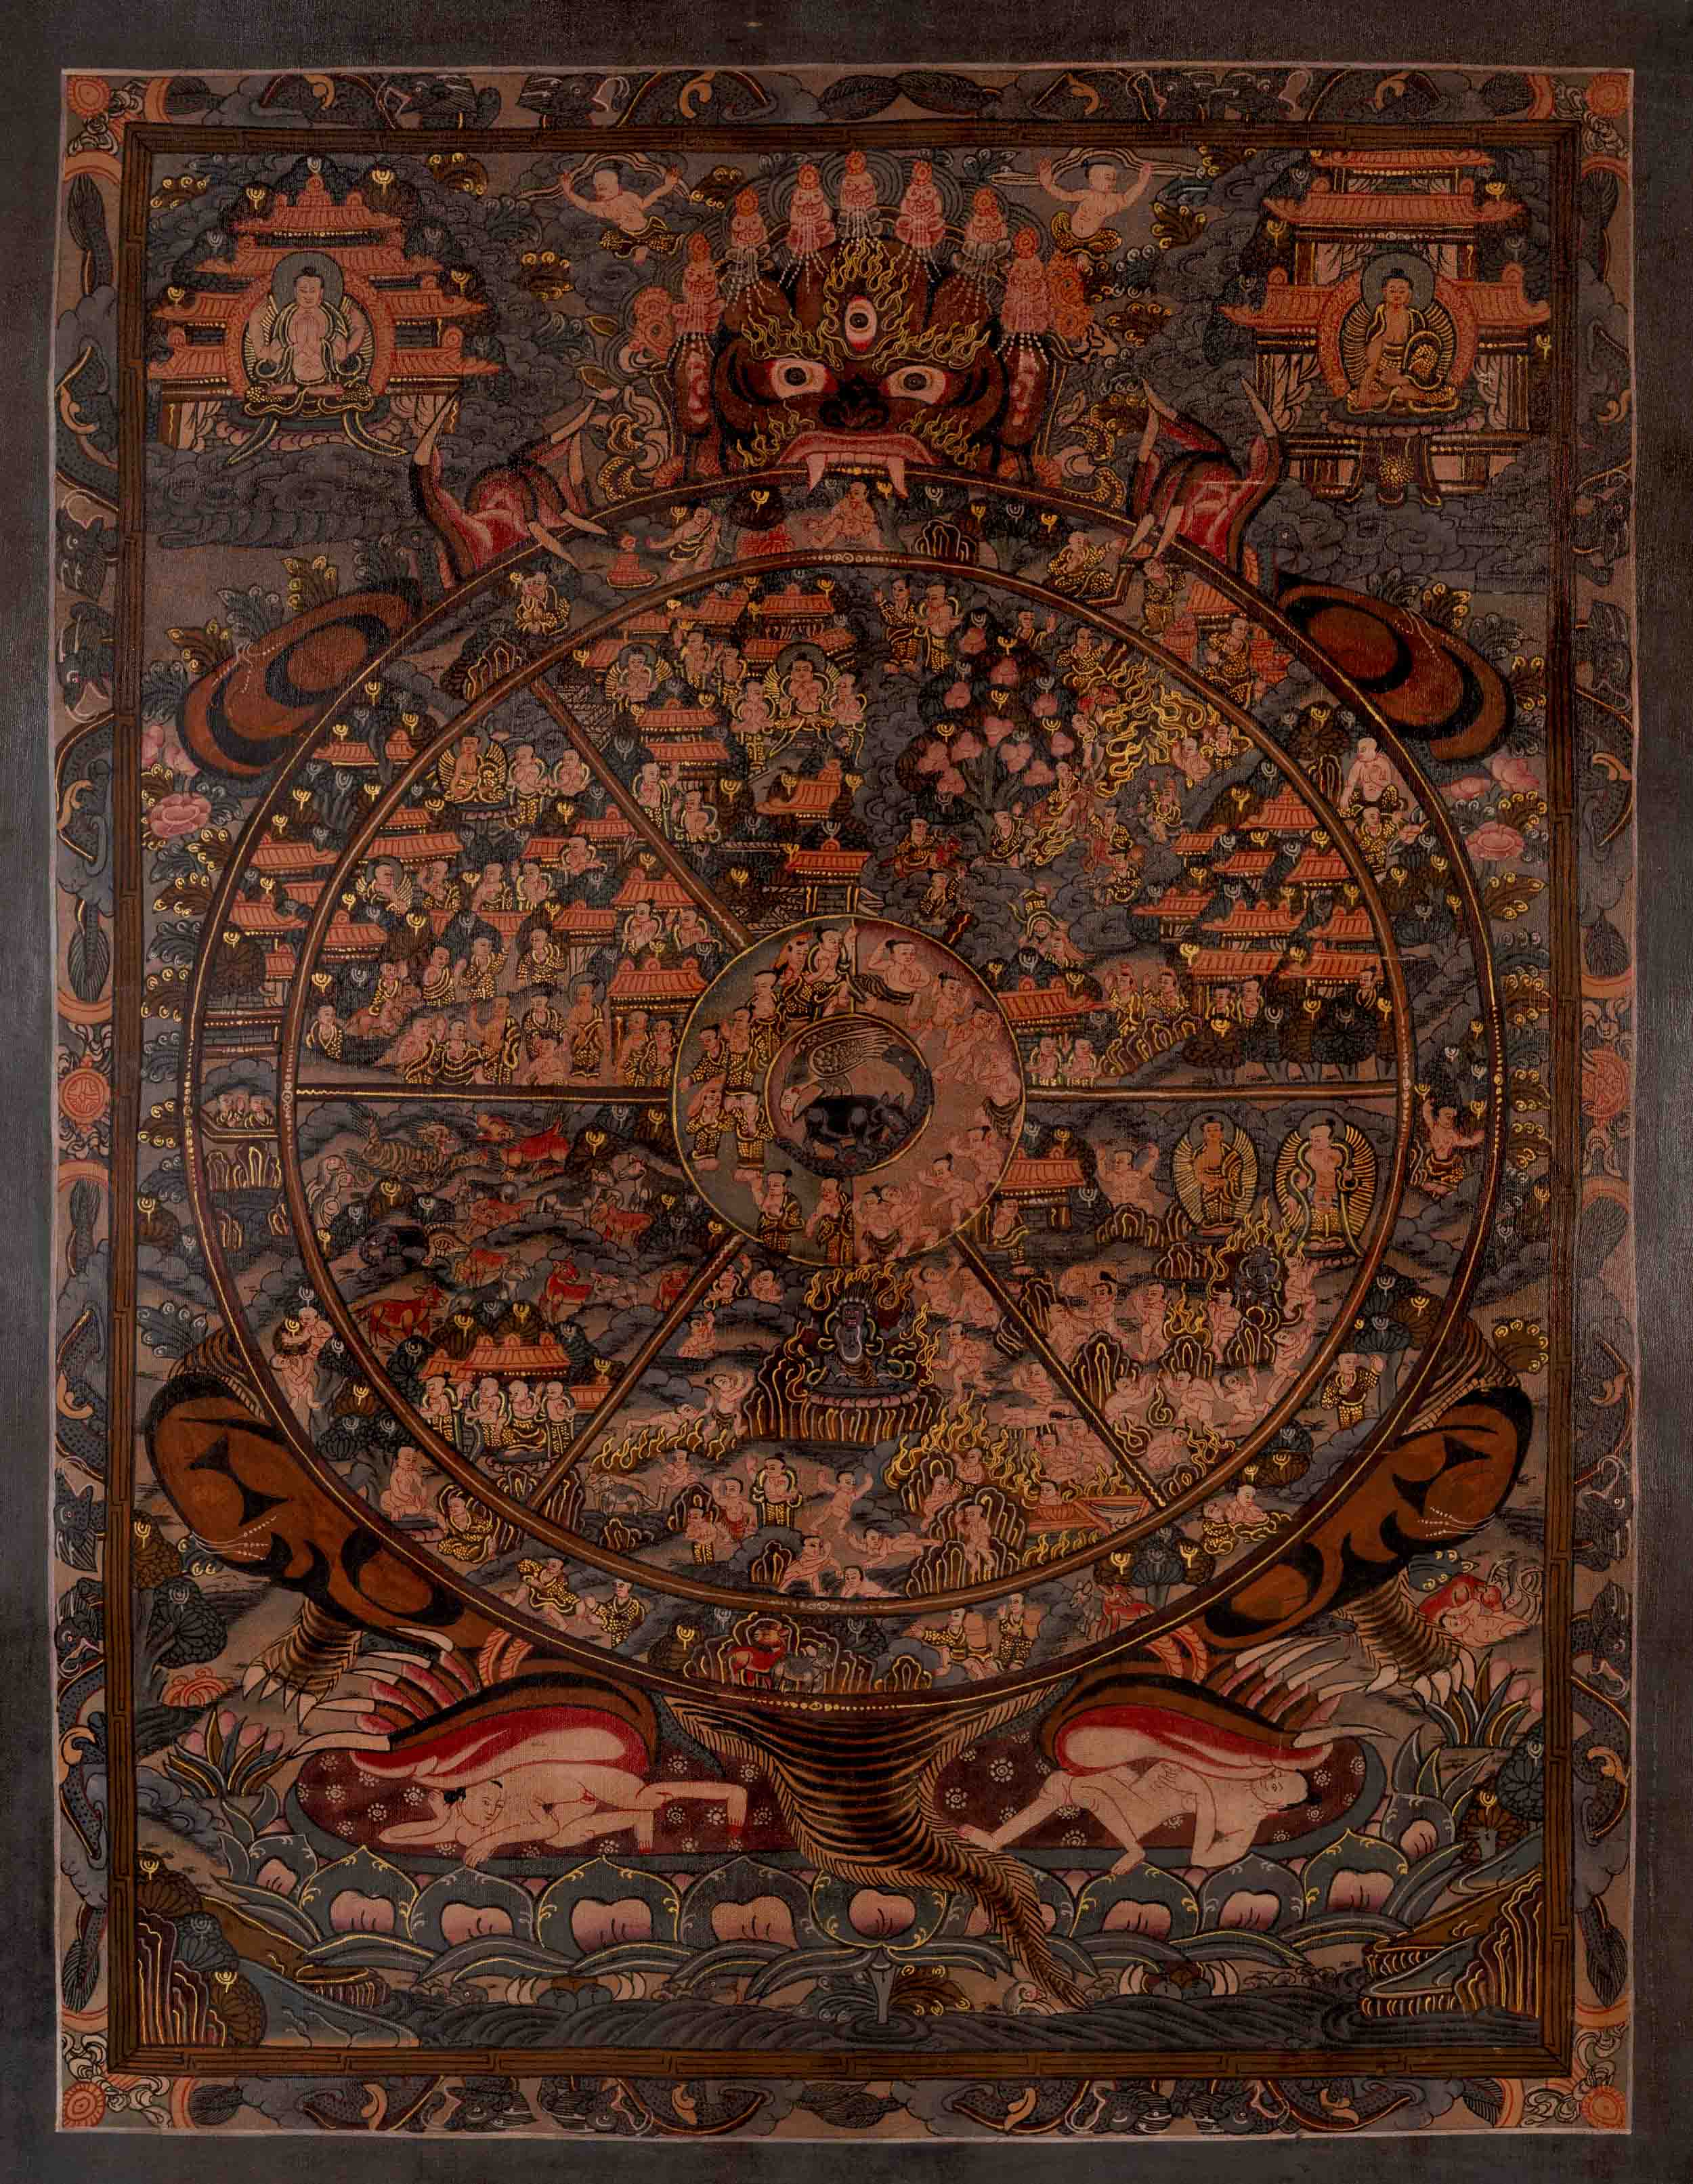 Wheel of Life Buddhist Painting | Original Hand Made Tibetan Buddhist Thangka Art